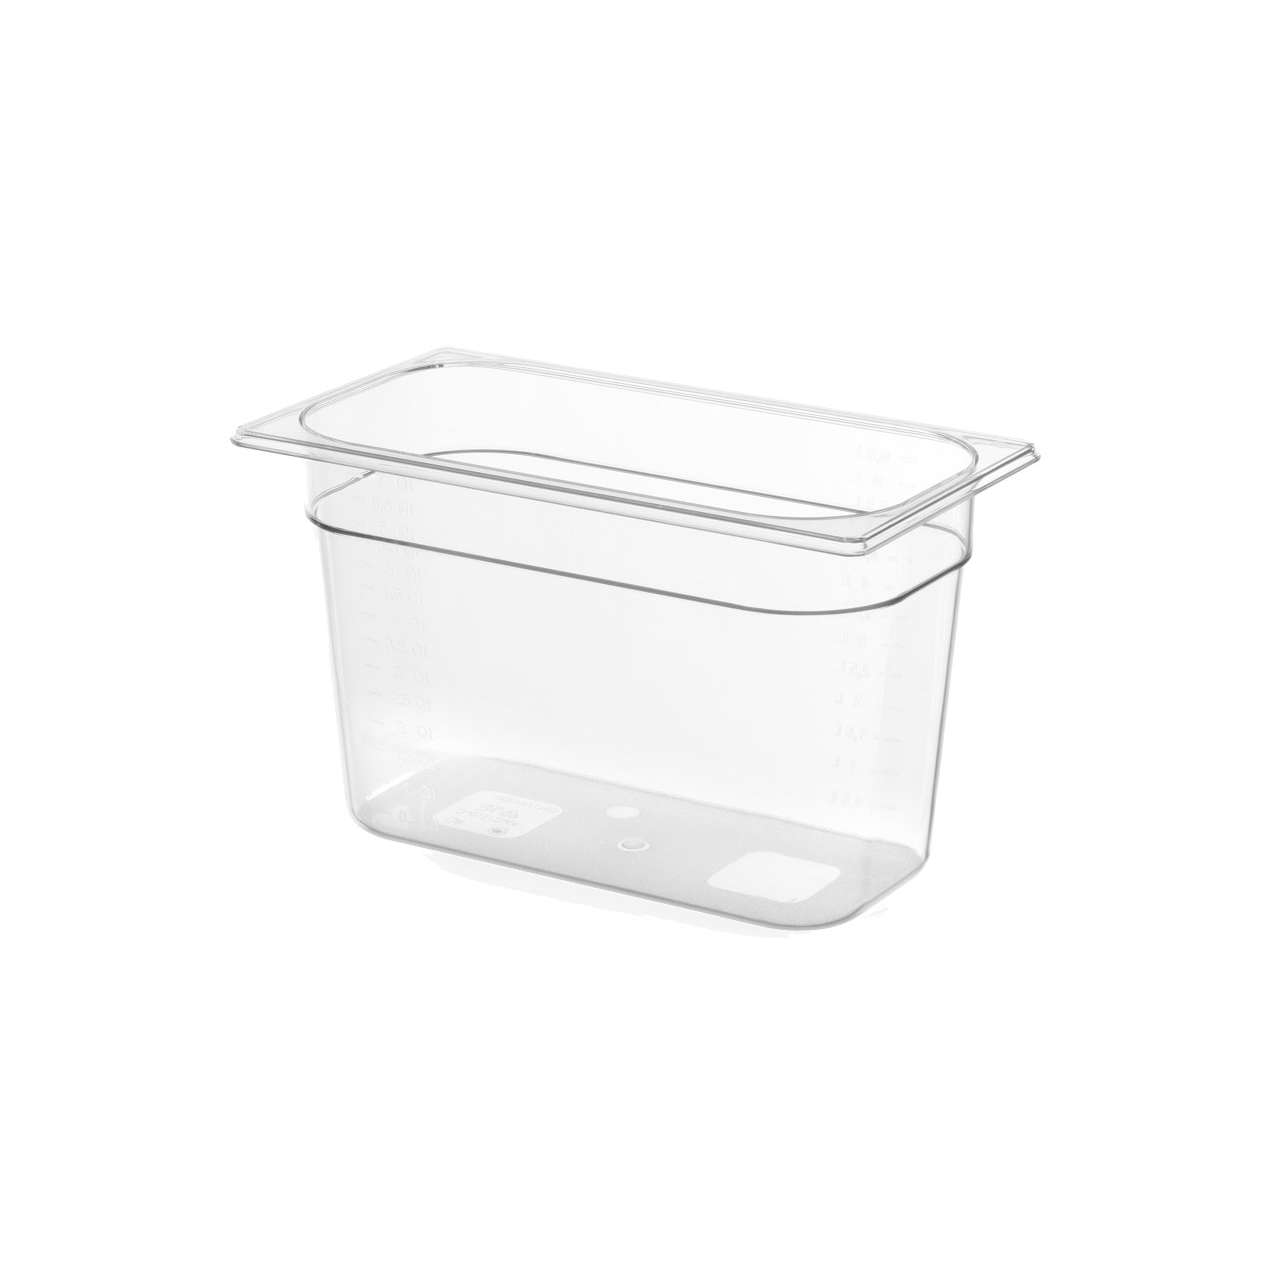 Wartmann 1507 (1300W) + Ziva OneTouch + 7 liter container package[tweedekans]